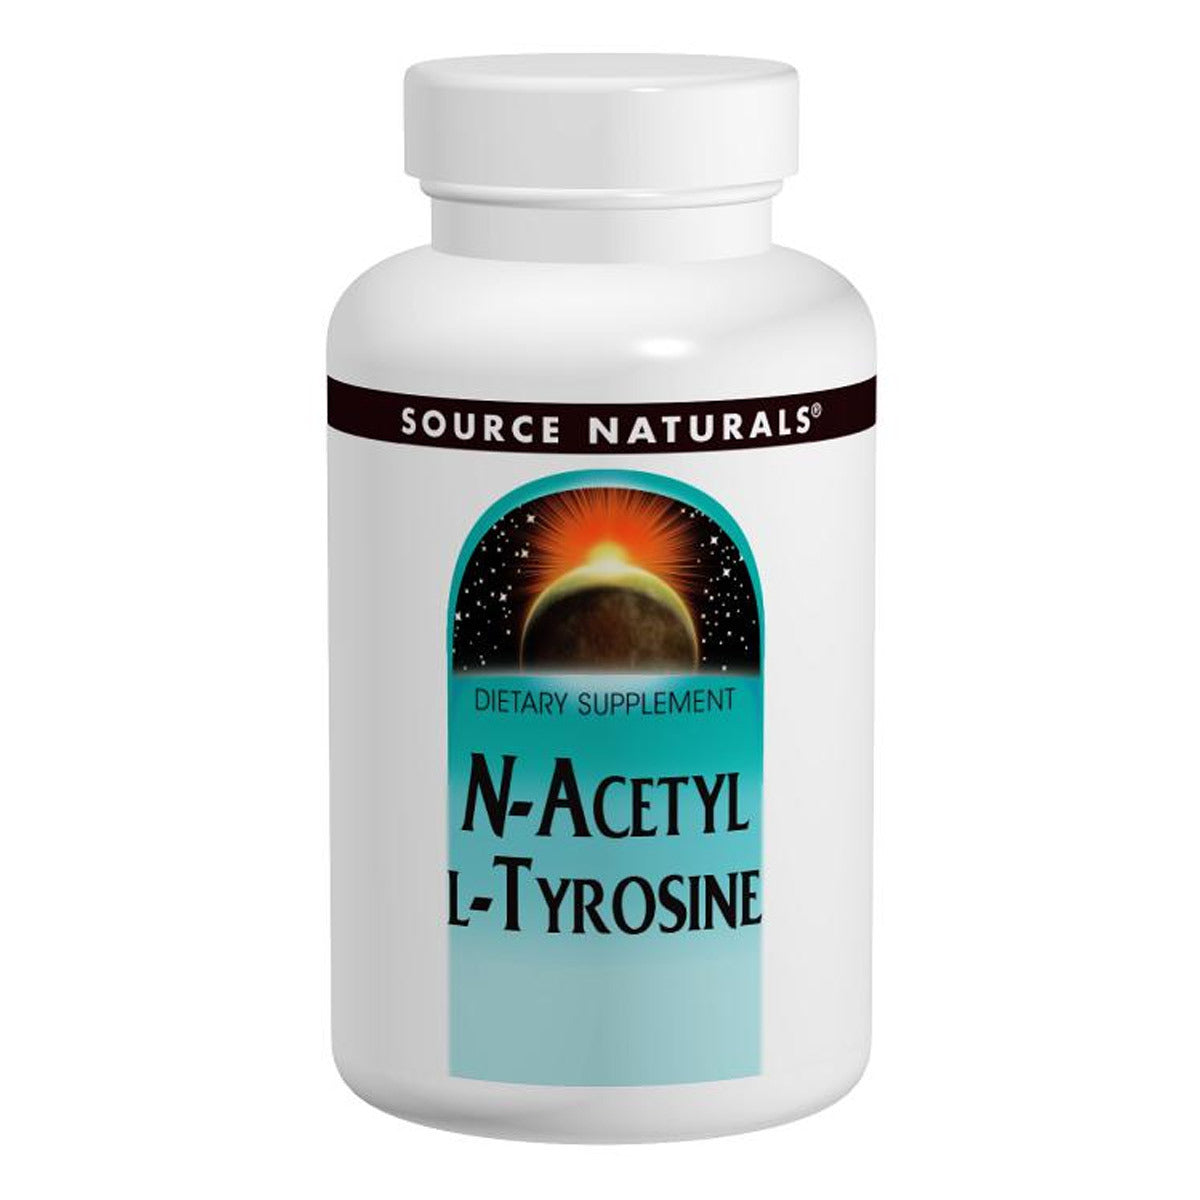 Primary image of N-Acetyl L-Tyrosine